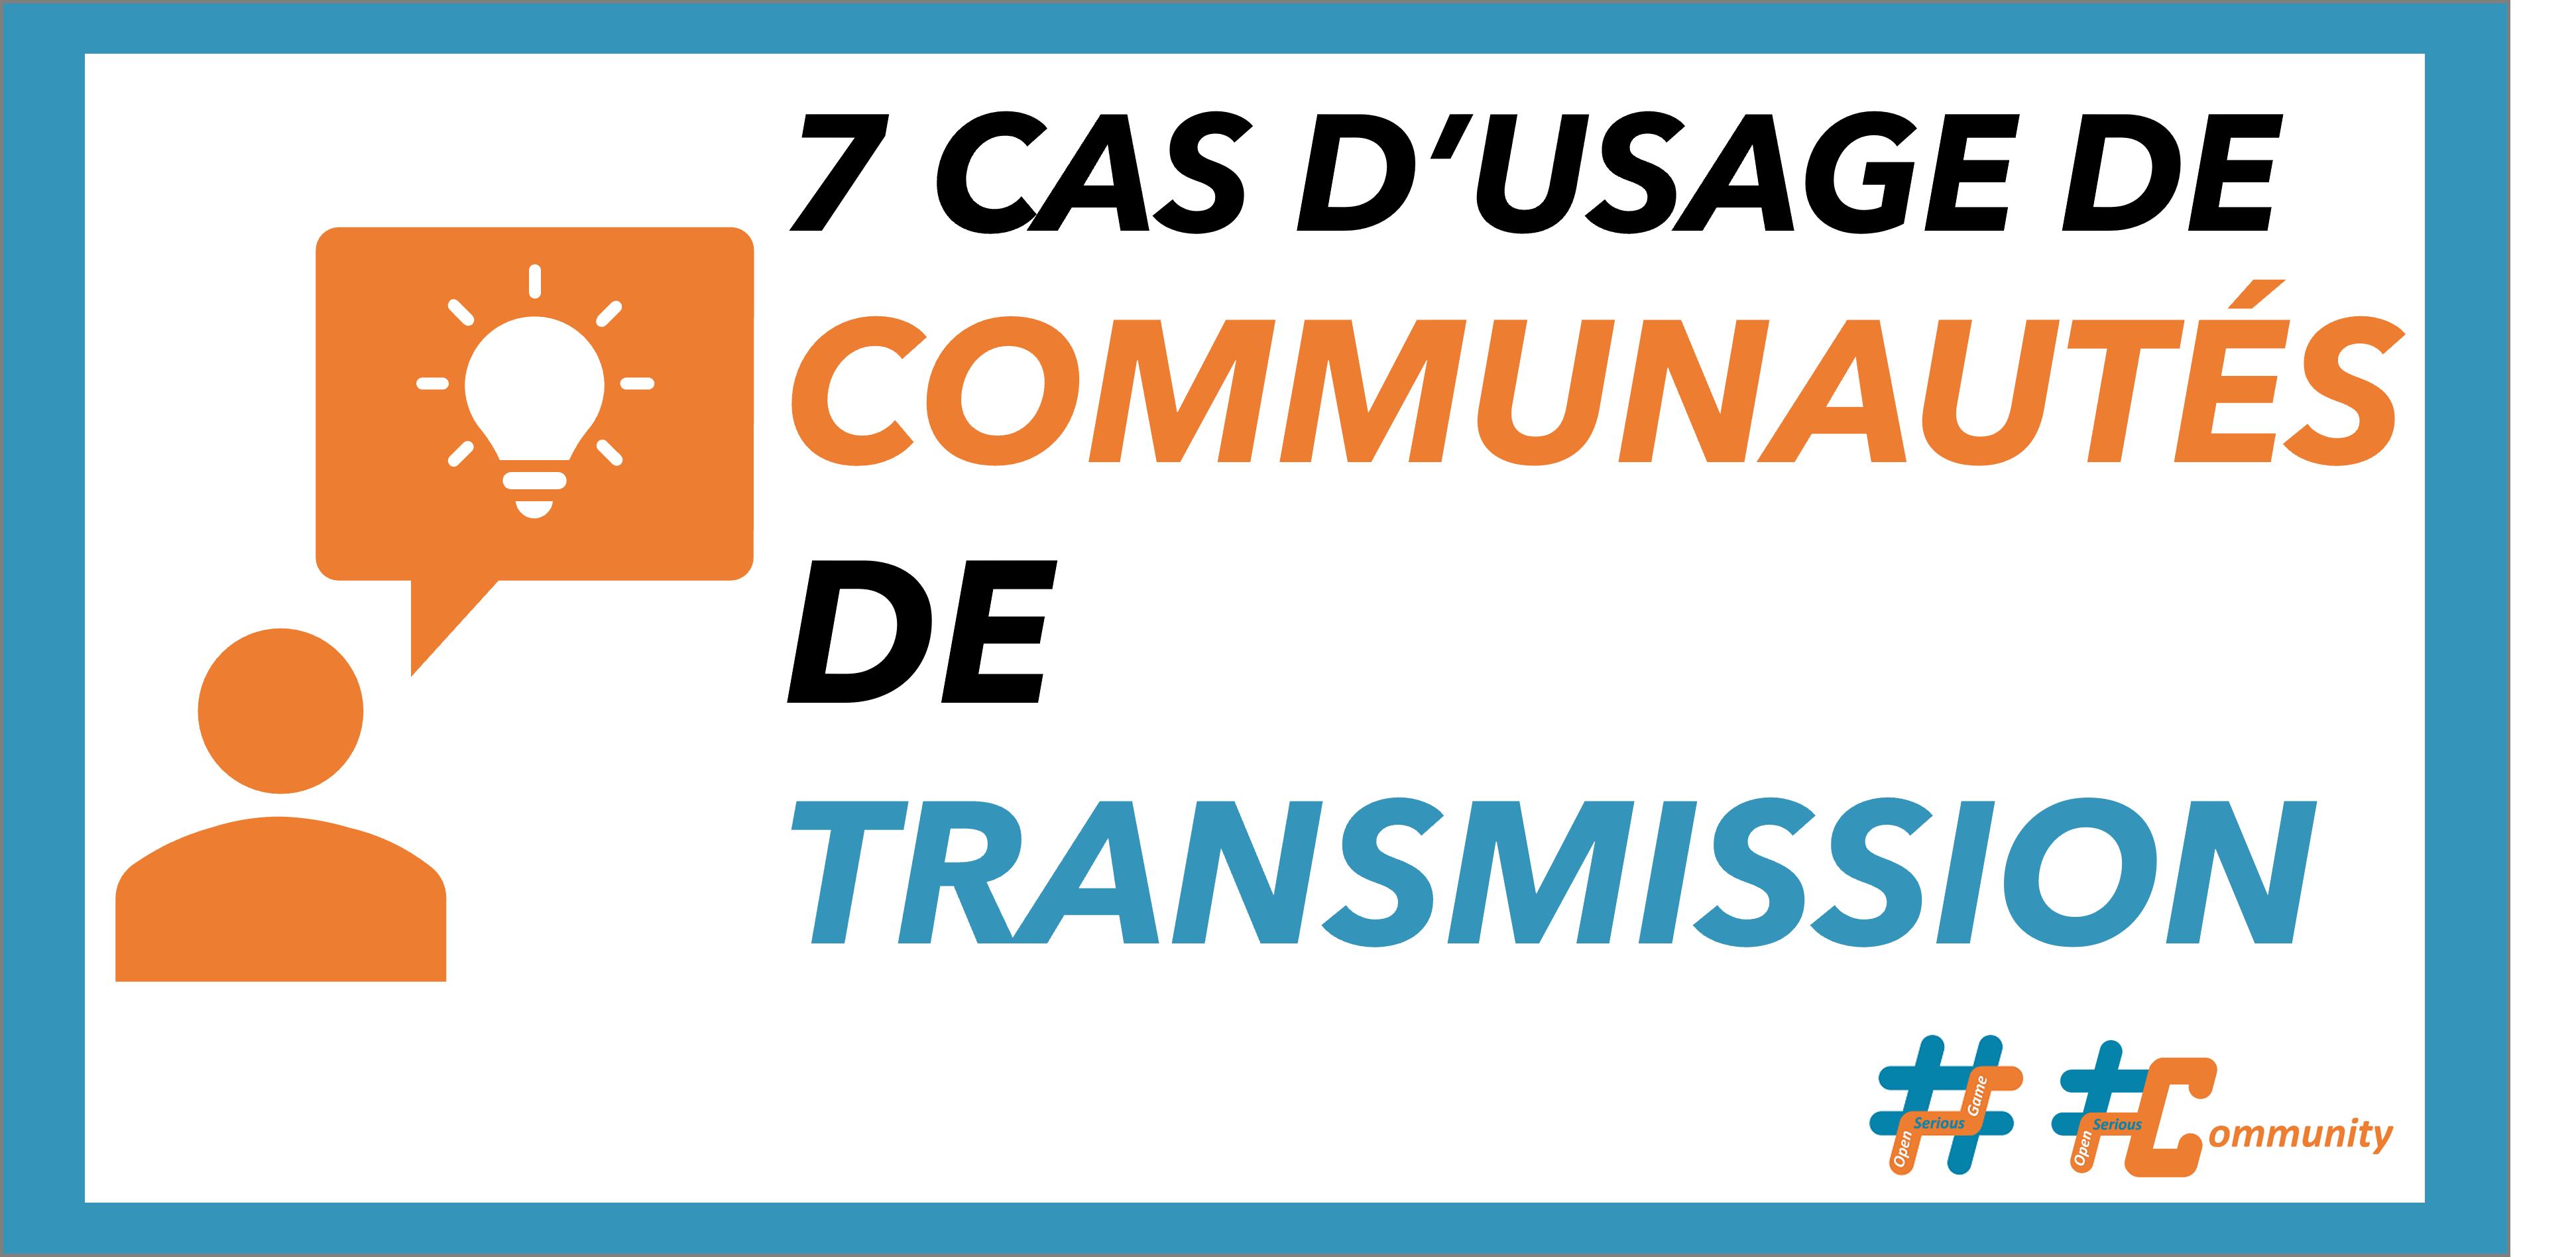 #OSG 801 7 cas d’usage des communautés de transmission